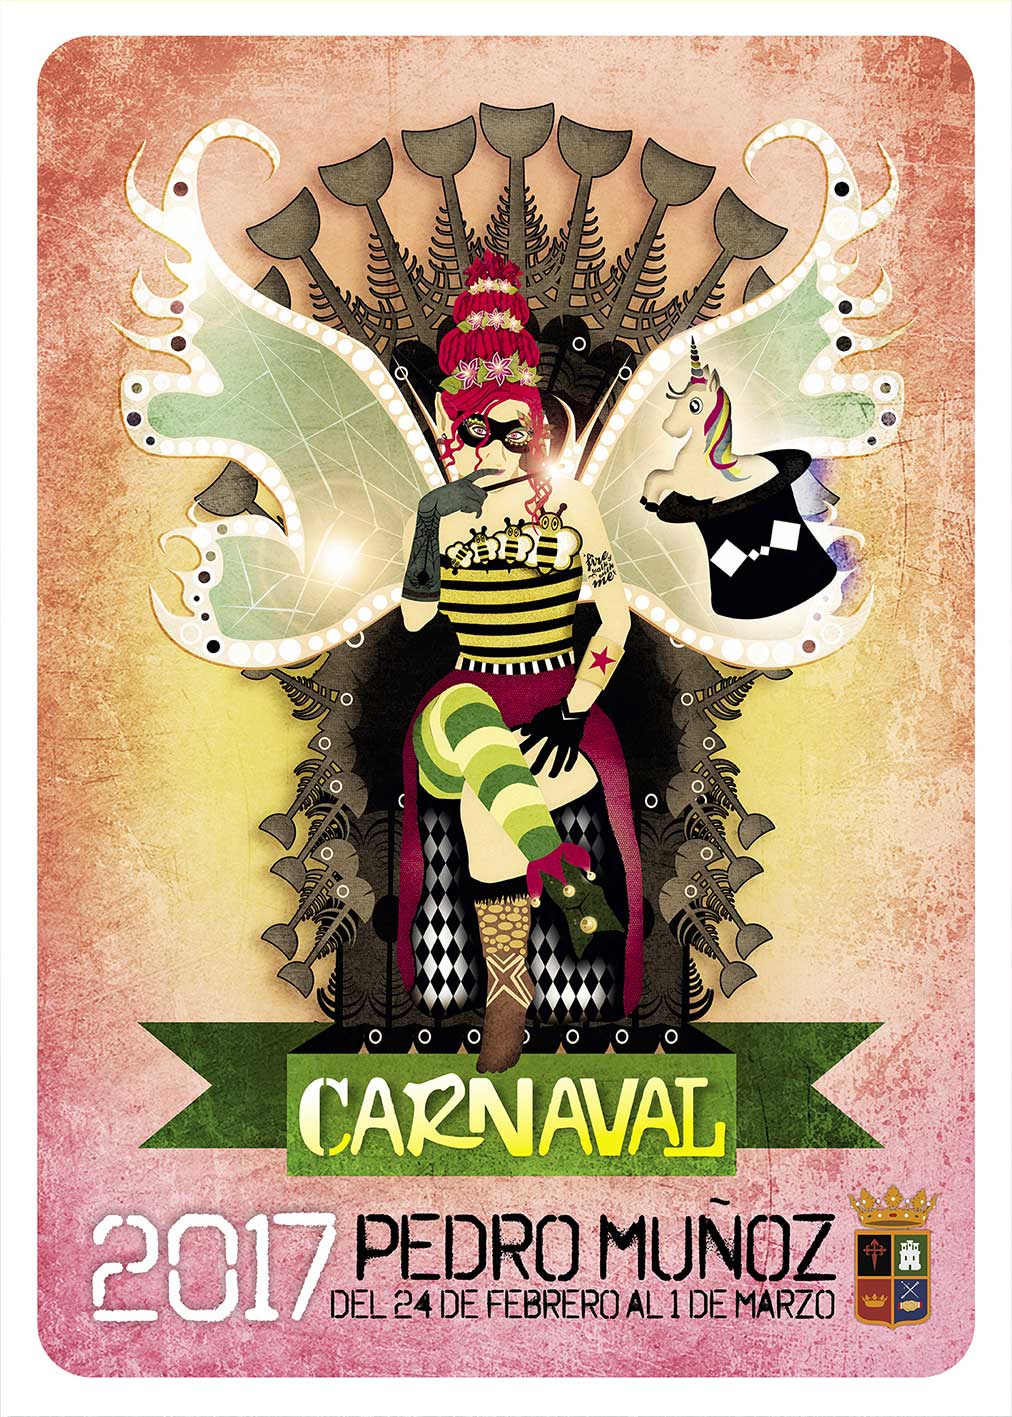 La imagen del Carnaval de Pedro Muñoz será el cartel de Fatima García Rosado, bajo el lema “CARANAVAL MÁGICO”